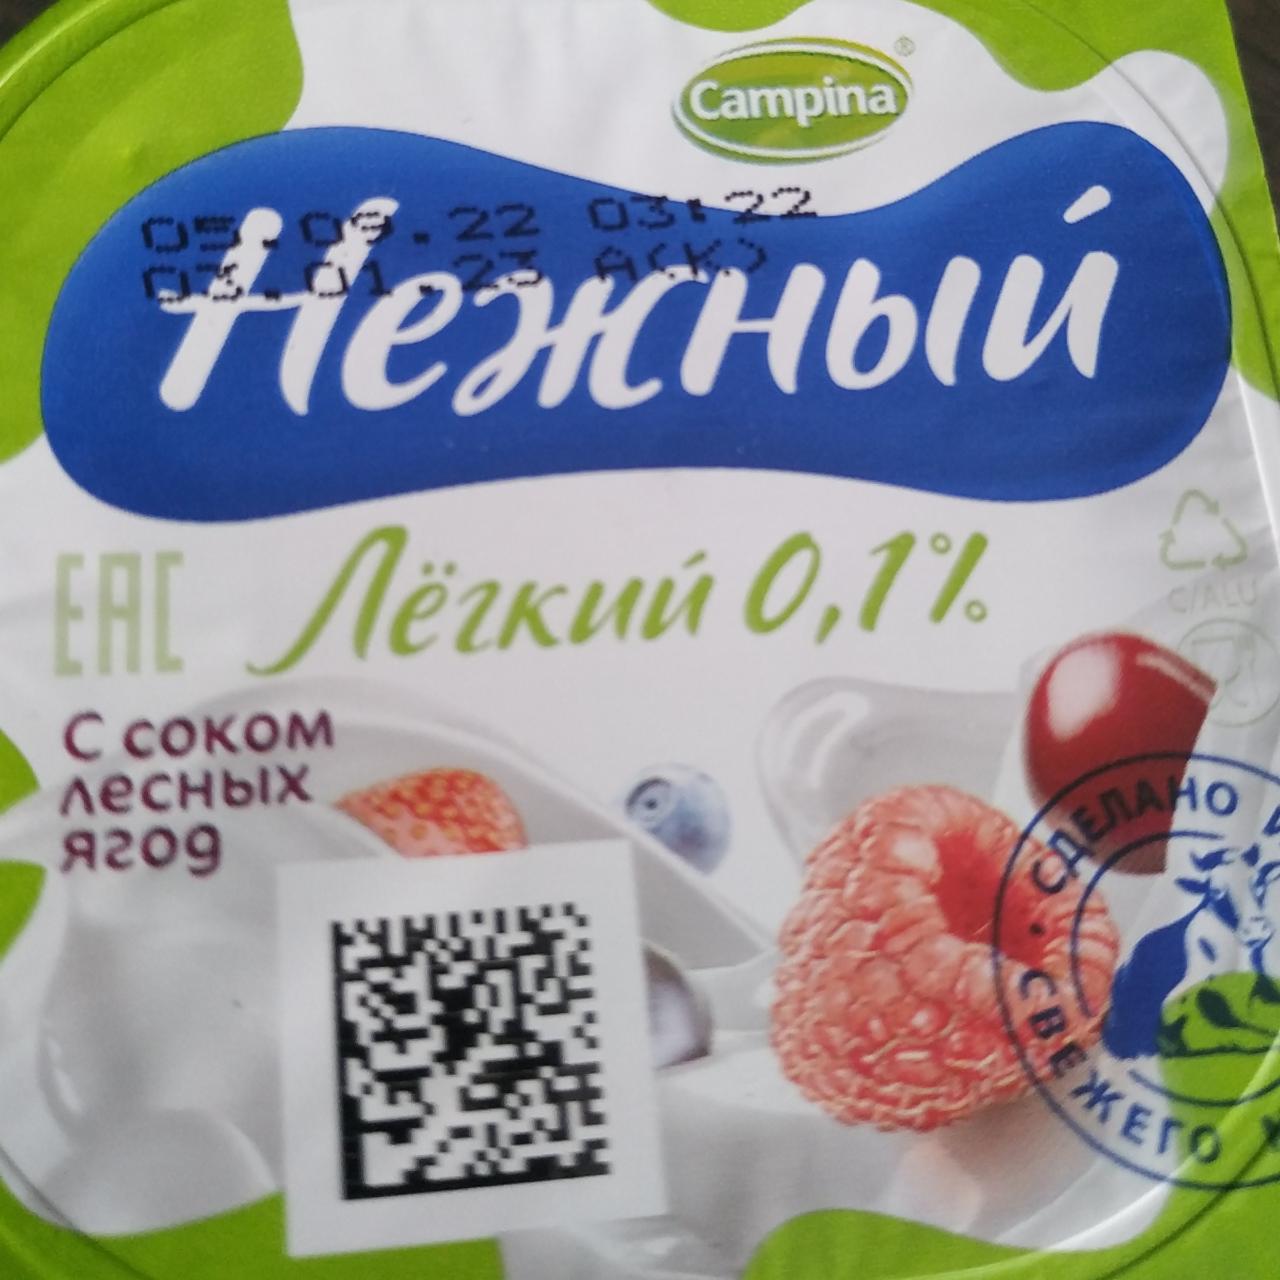 Фото - Йогурт Нежный с соком лесных ягод Лёгкий 0.1% Campina